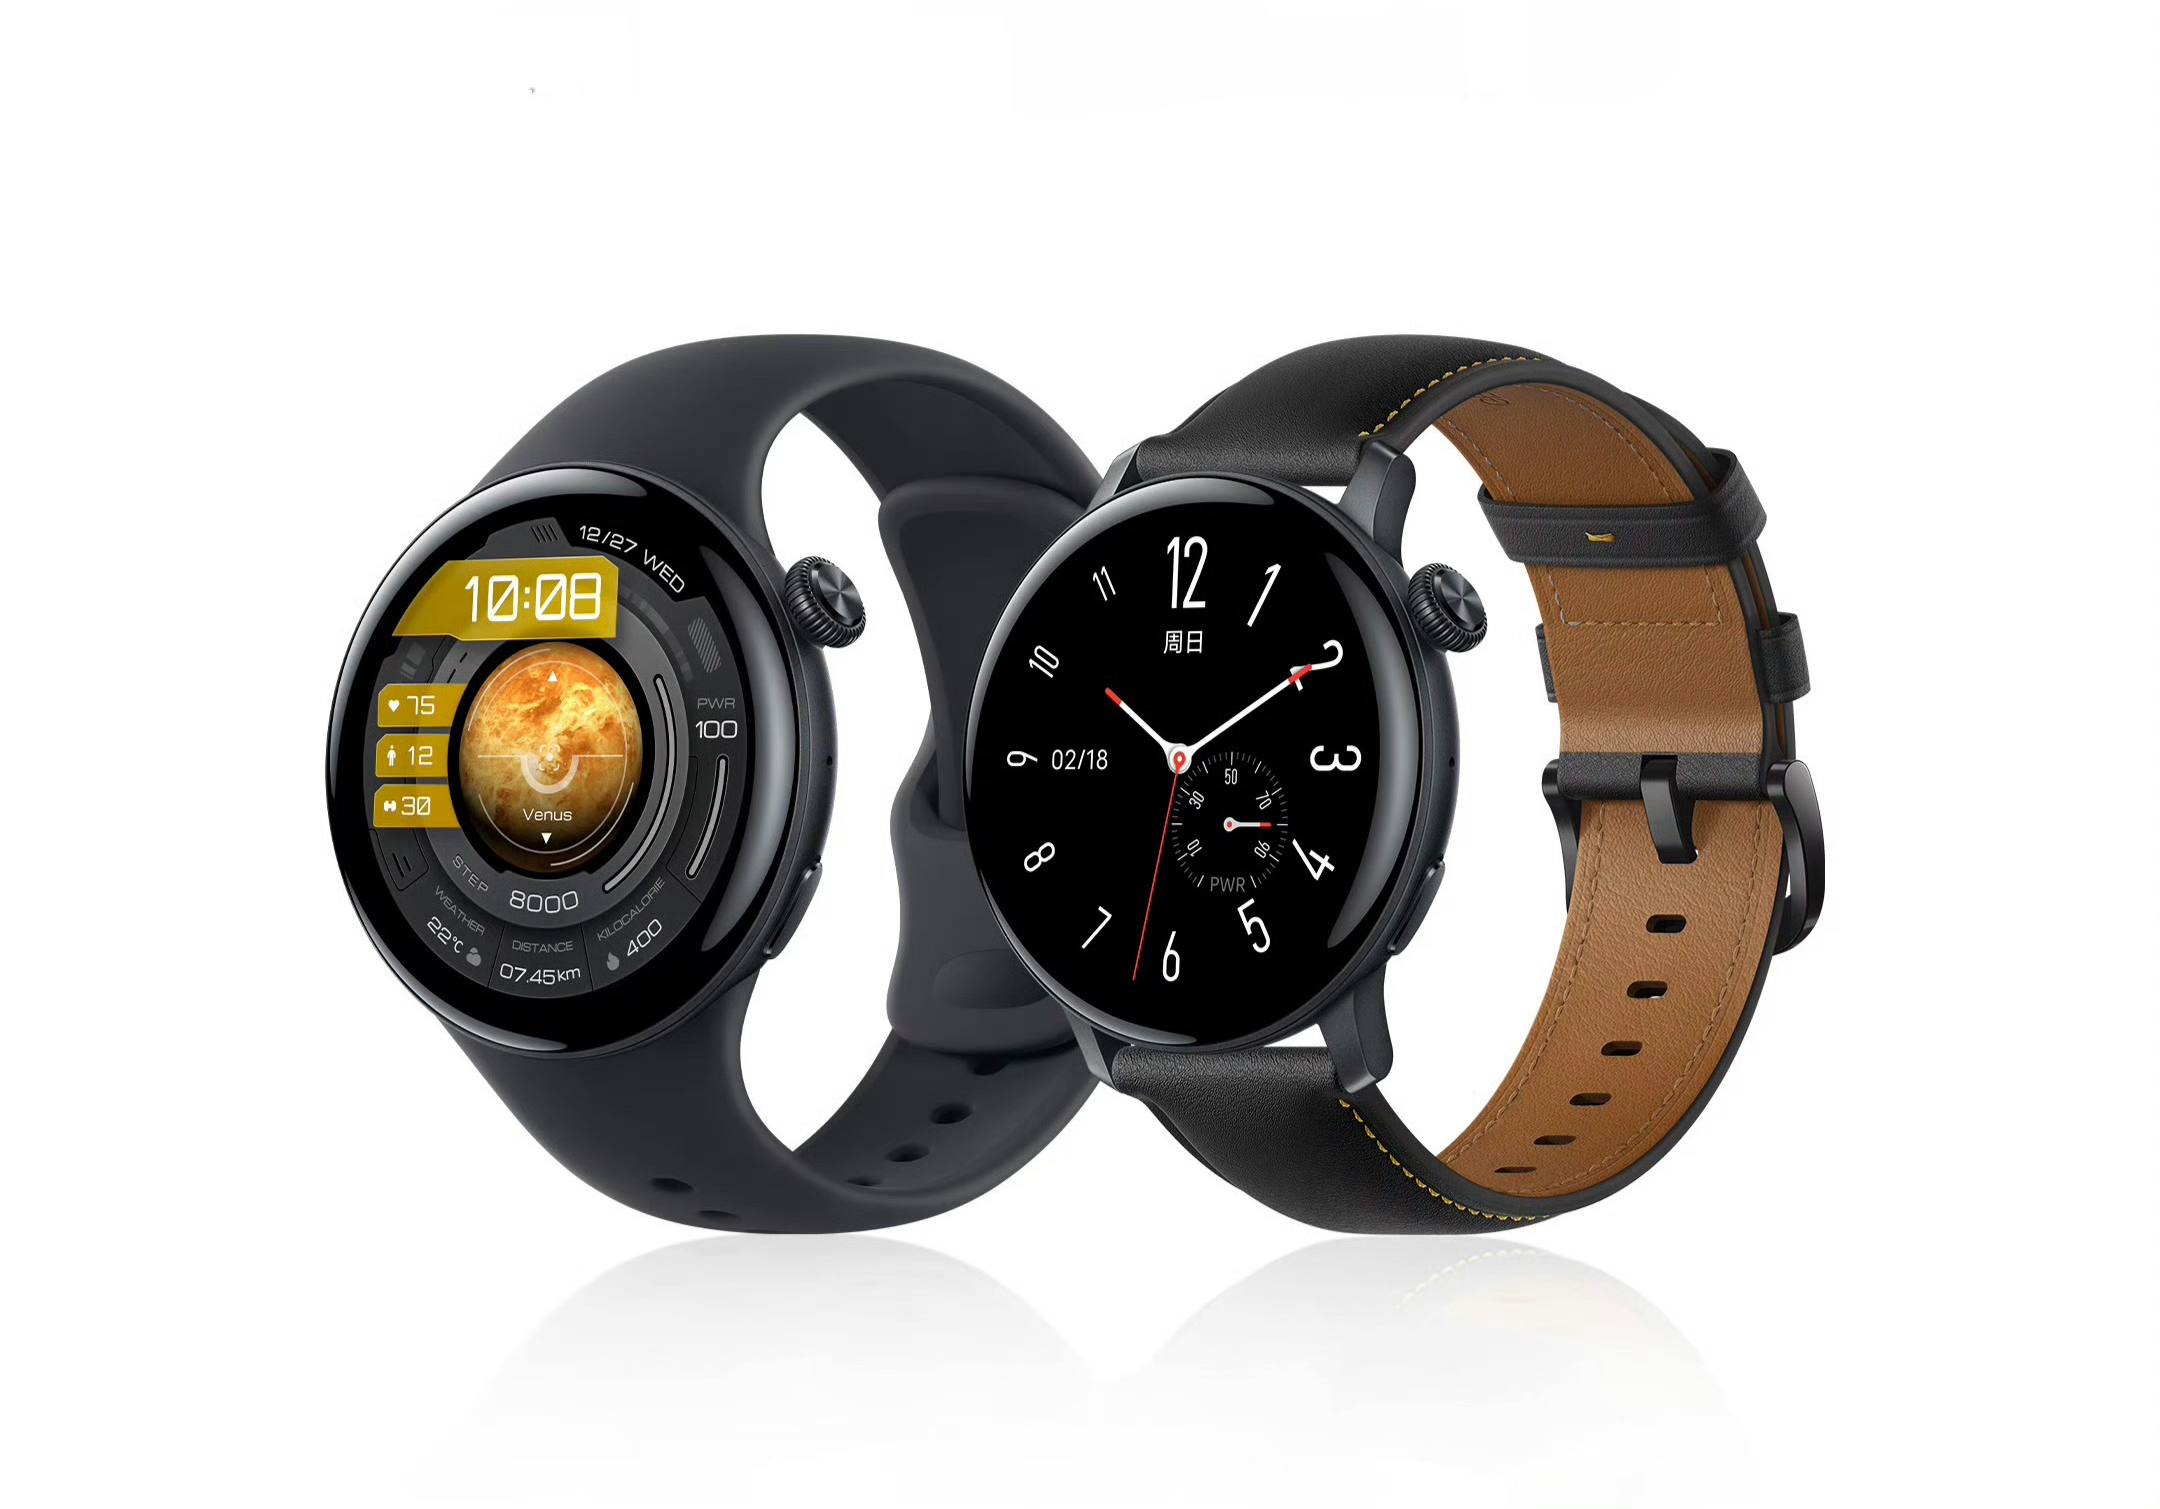 Sådan kommer iQOO Watch til at se ud: mærkets første eSIM-aktiverede smartwatch.